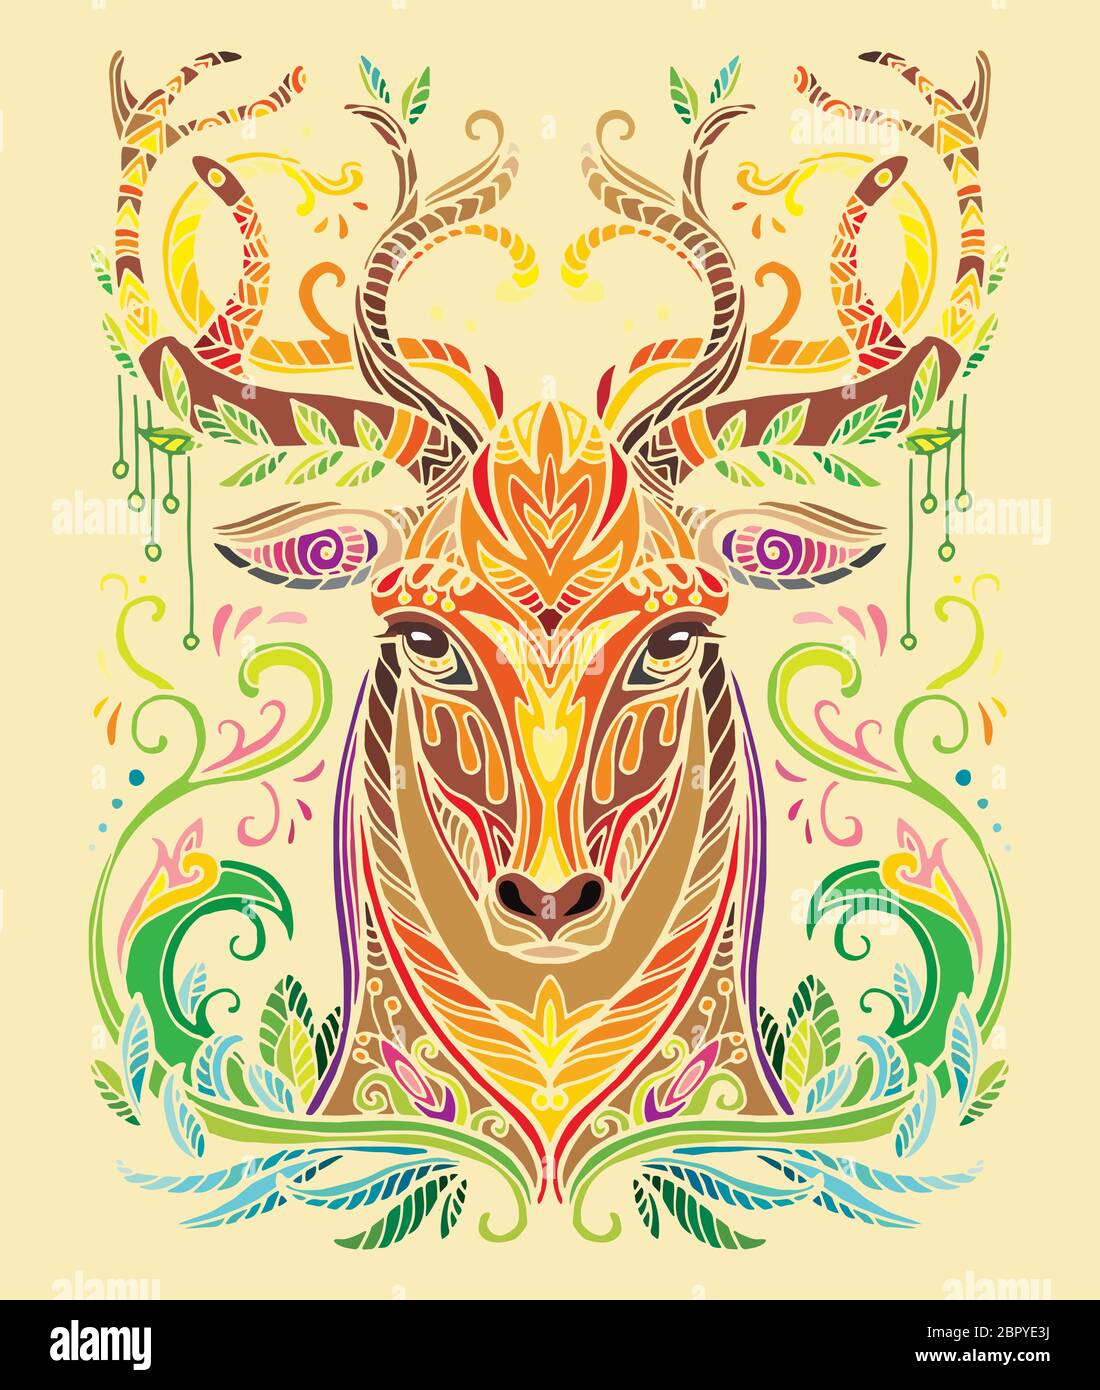 Vettore decorativo doodle testa ornamentale di cervo. Vettore astratto colorato illustrazione della testa del leone isolato su sfondo giallo. Illustrazione del magazzino Illustrazione Vettoriale